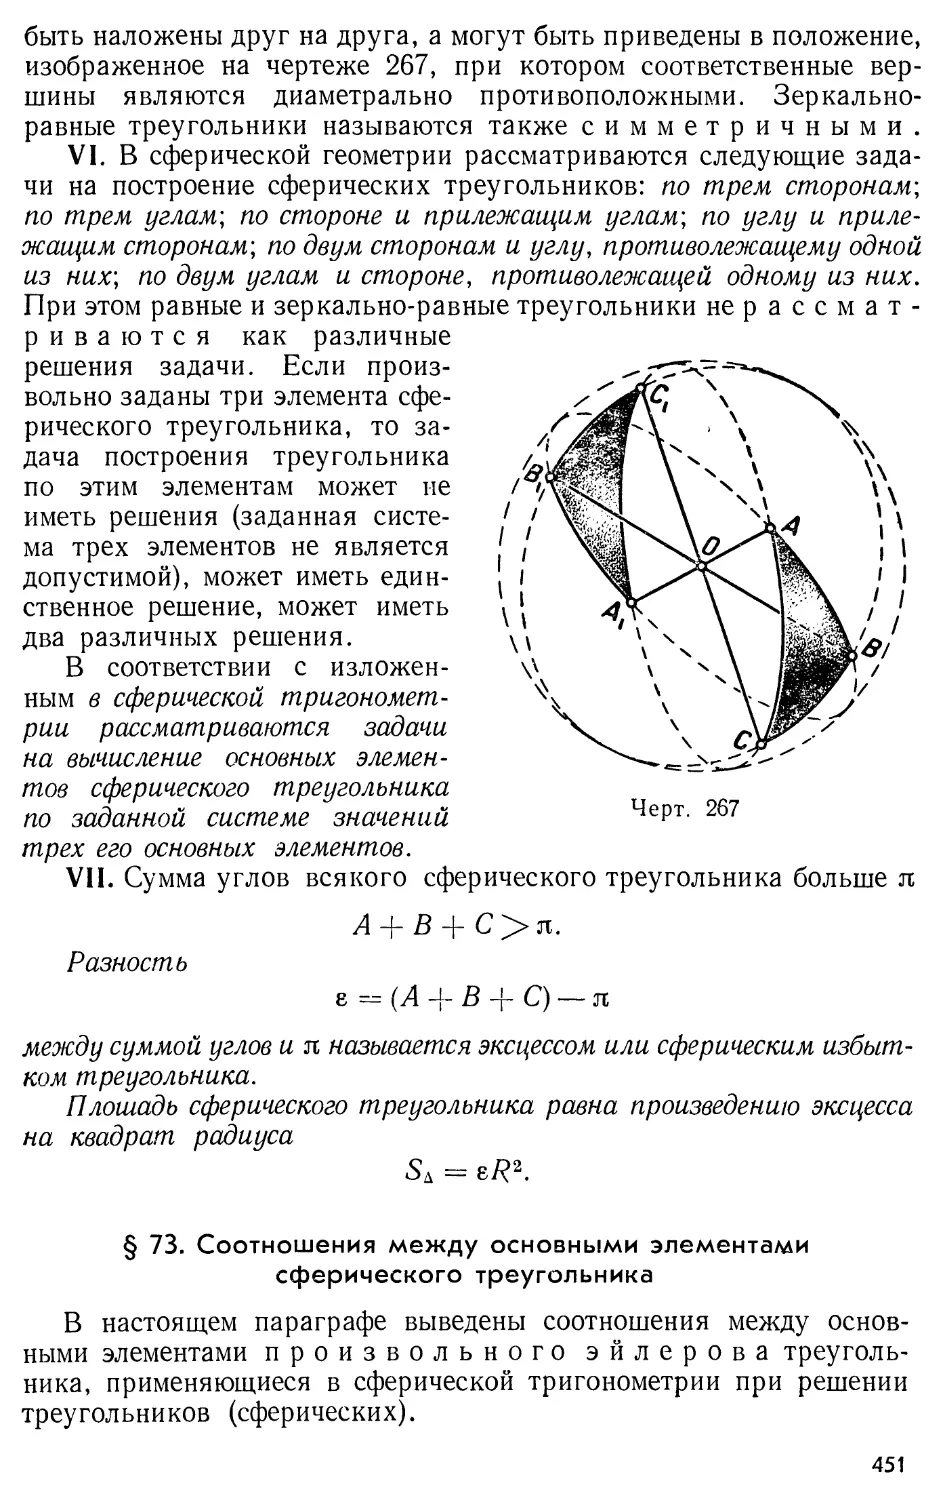 § 73. Соотношения между основными элементами сферического треугольника